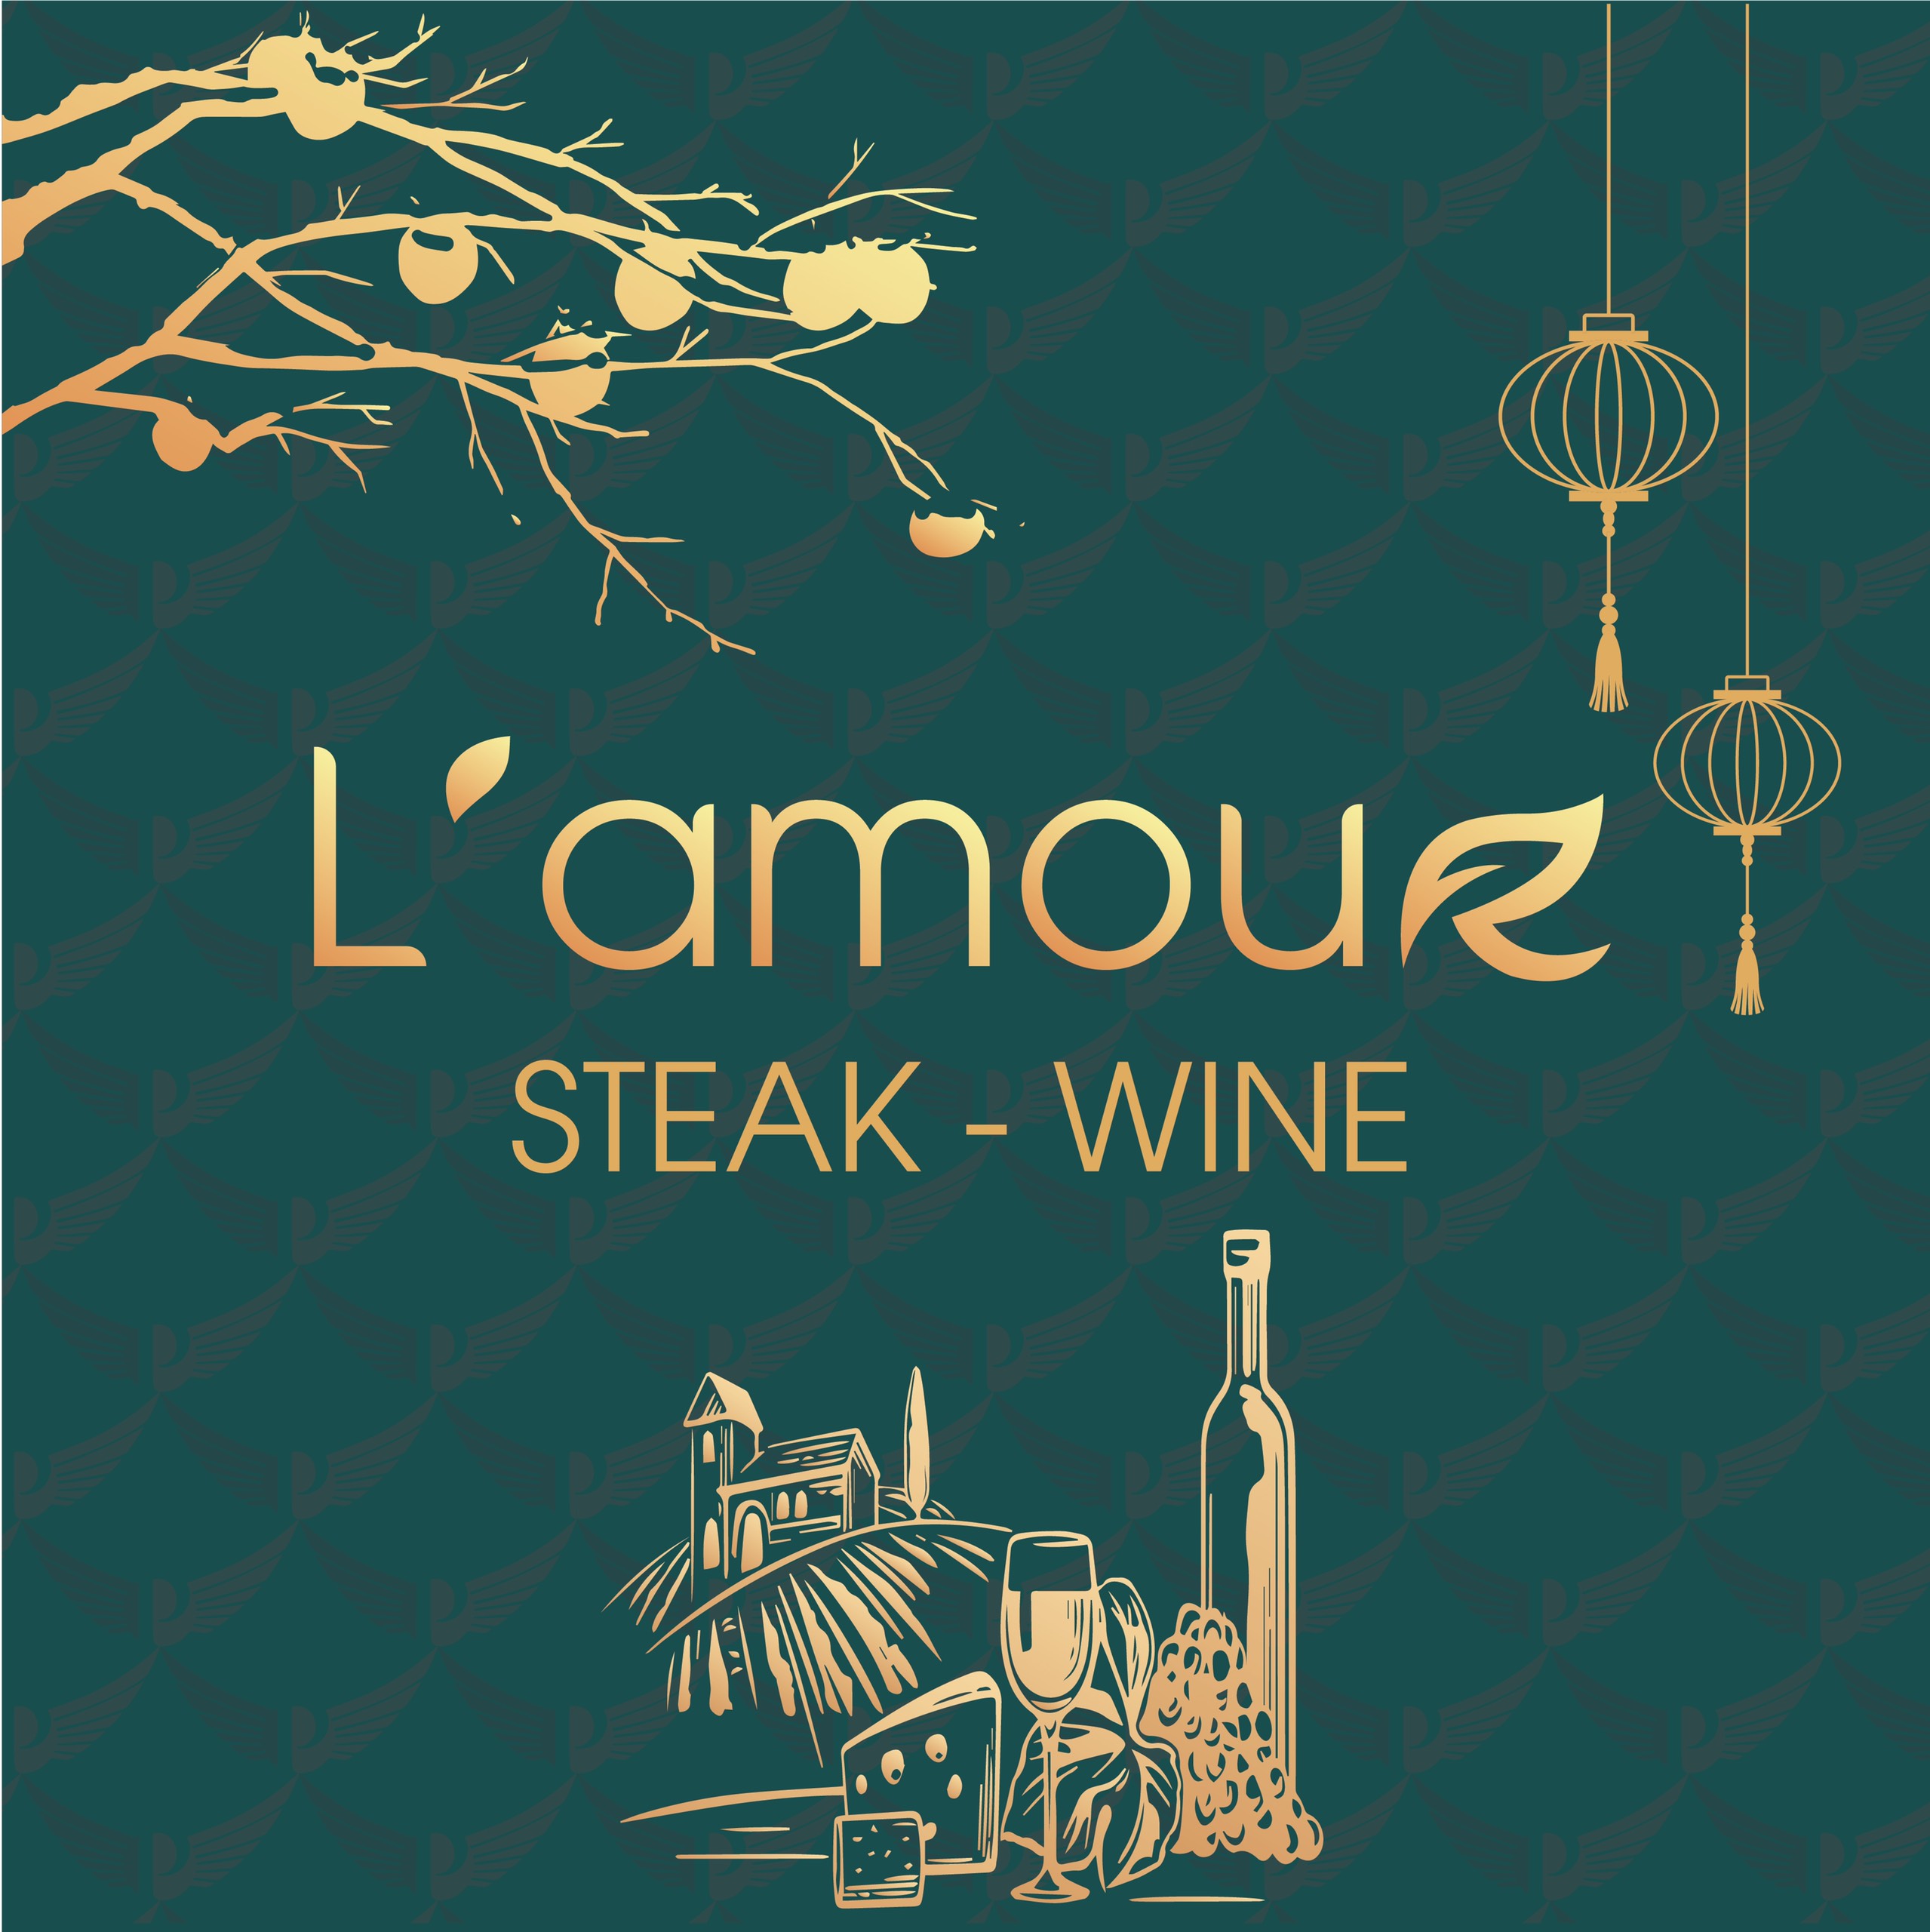 L'amour Steak Wine - Nhà hàng beefsteak ngon, phân phối rượu vang chuẩn